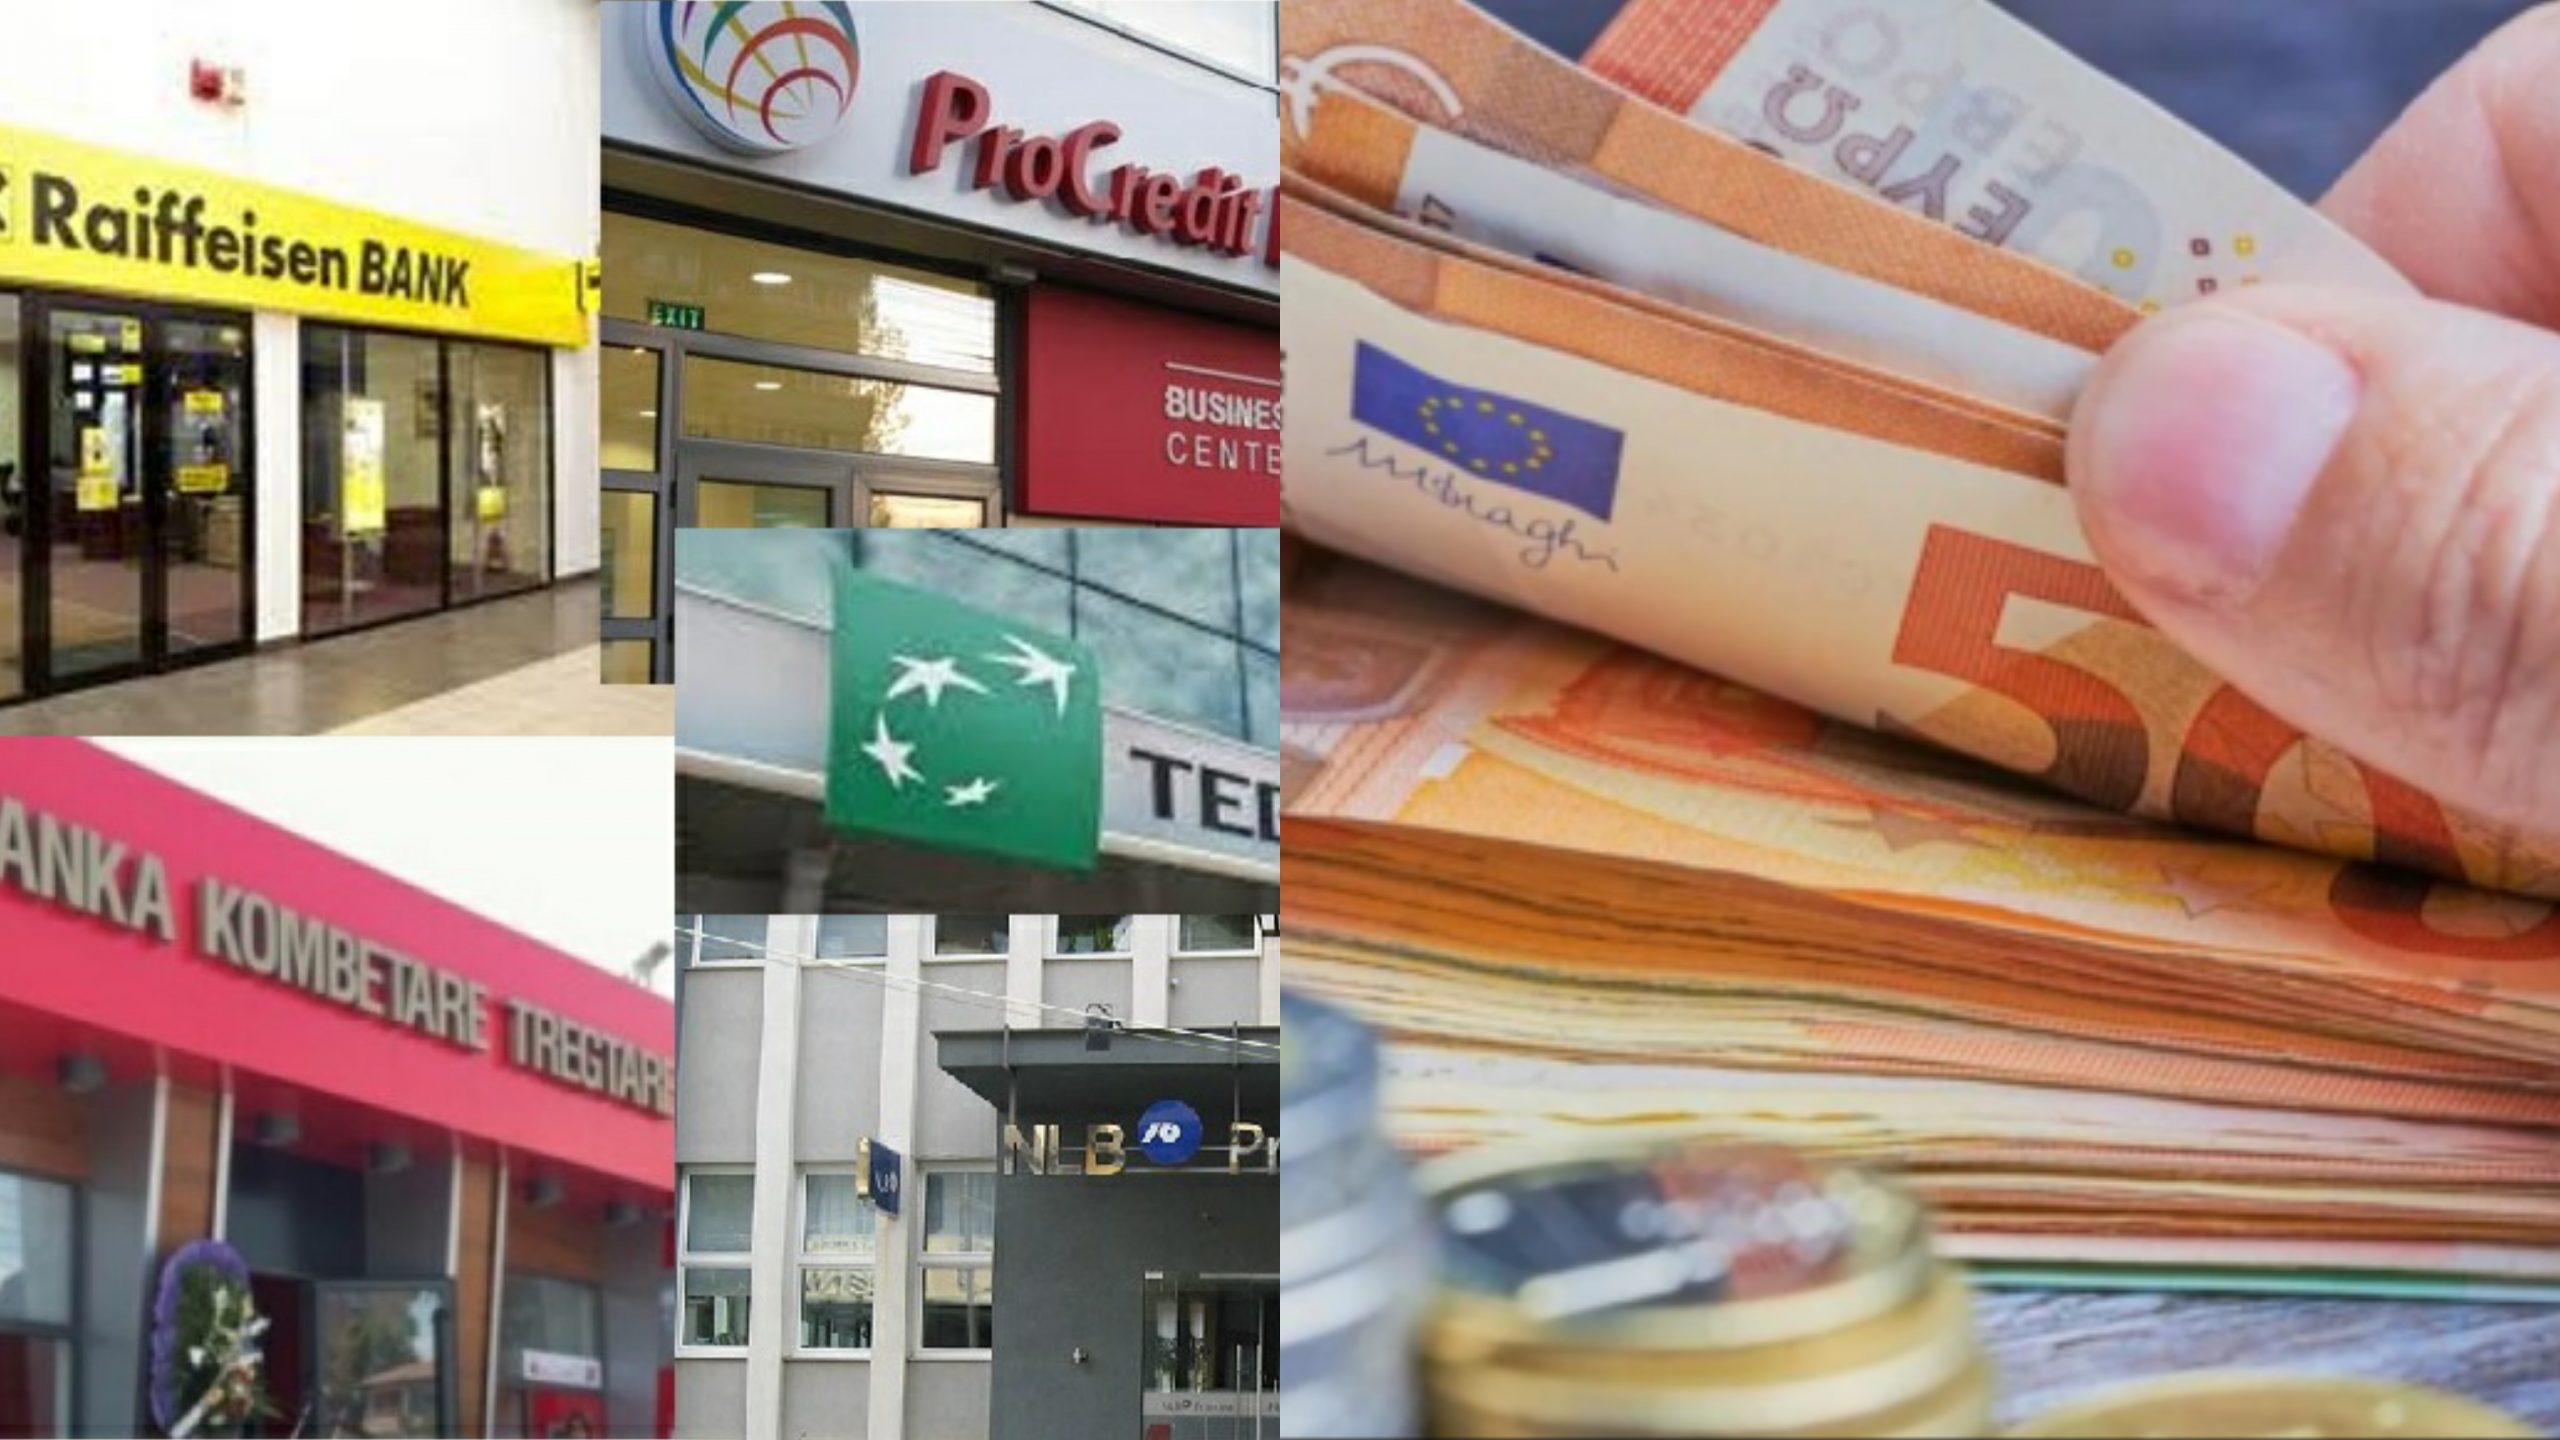 Kjo është ‘hilja’ që bankat po përdorin ndaj qytetarëve në Kosovë